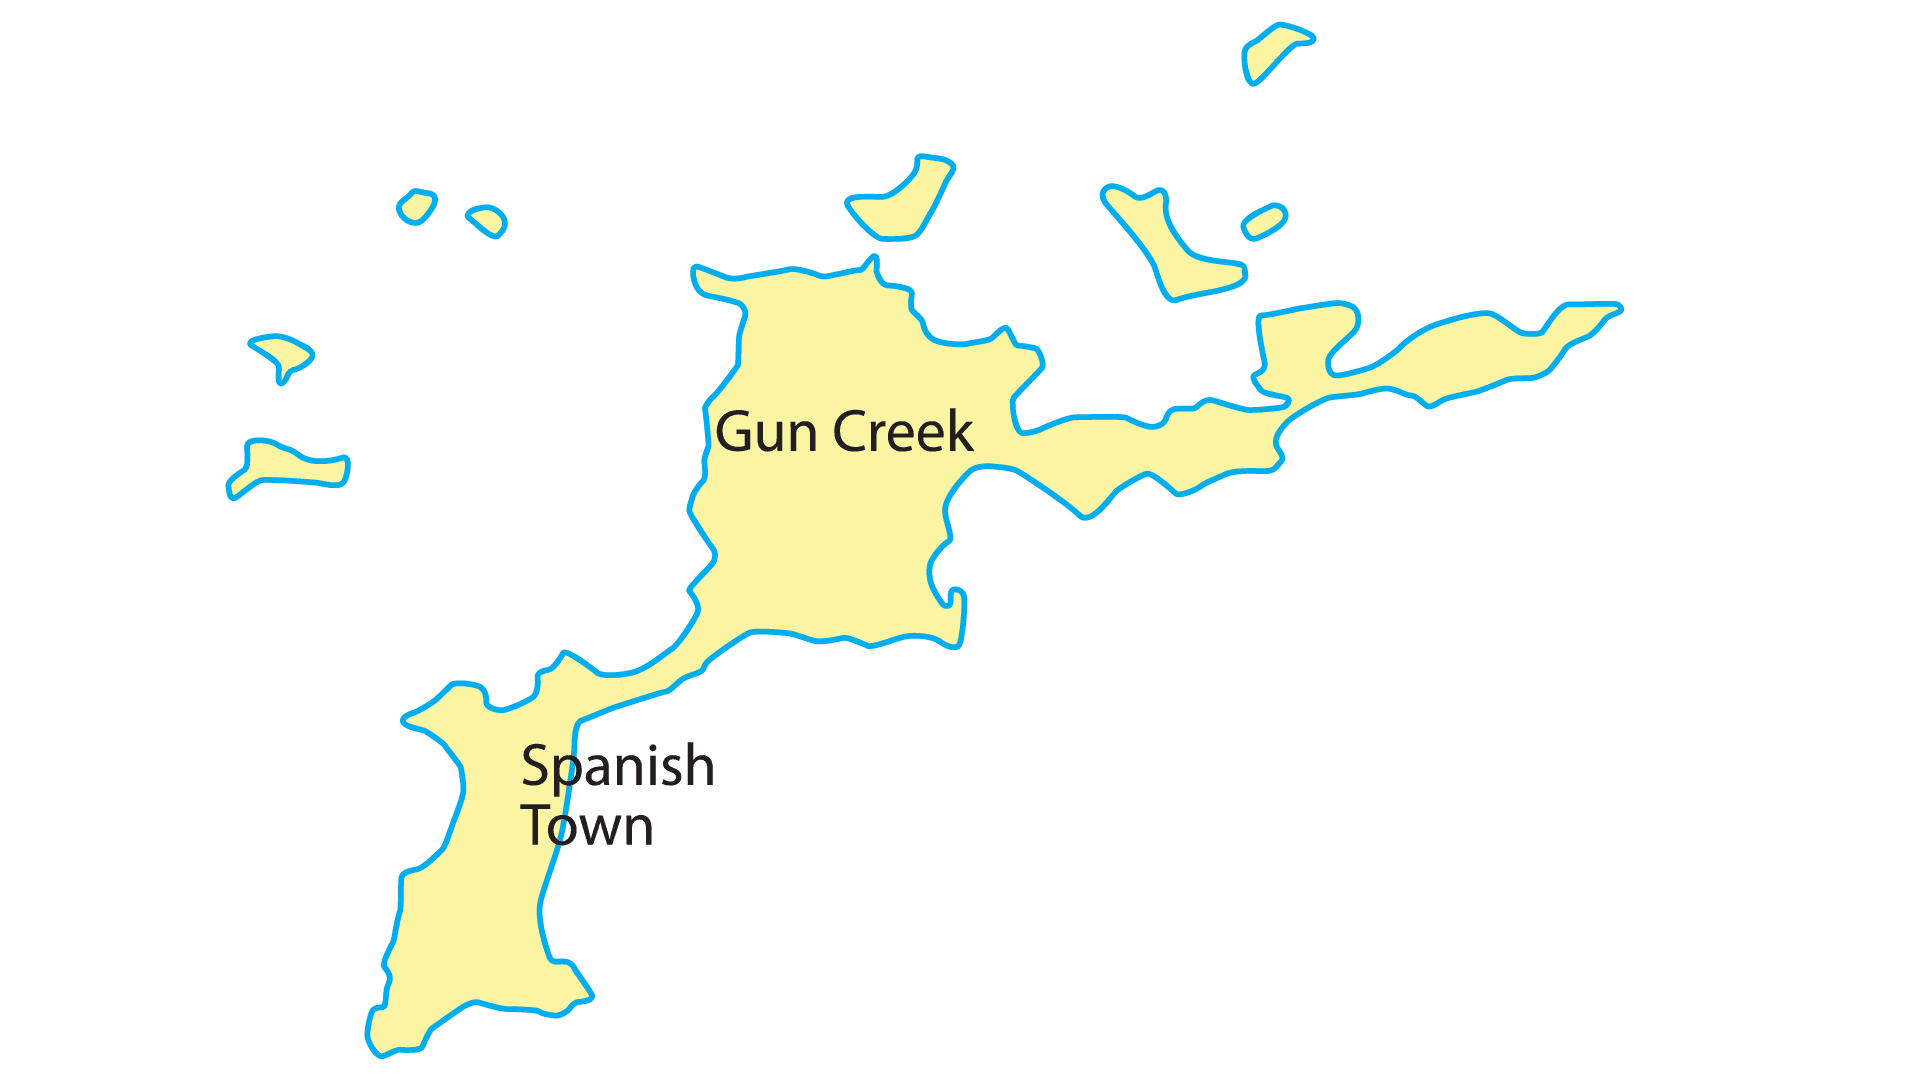 Map rendering of Virgin Gorda Island